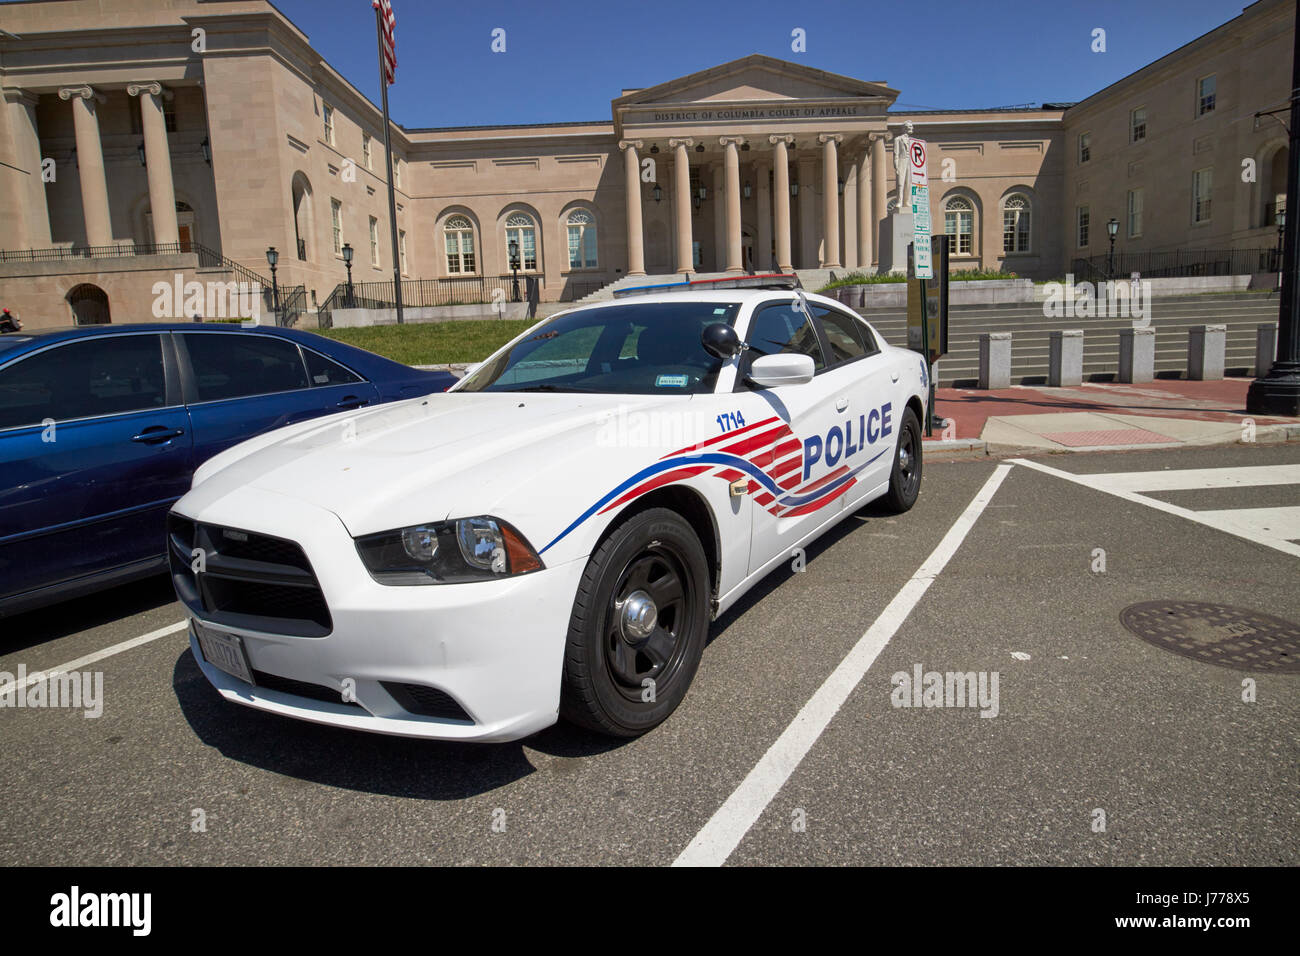 Dc voiture de police en face de l'Hôtel de ville du District de Columbia maintenant la cour d'appel judiciaire Square Washington DC USA Banque D'Images